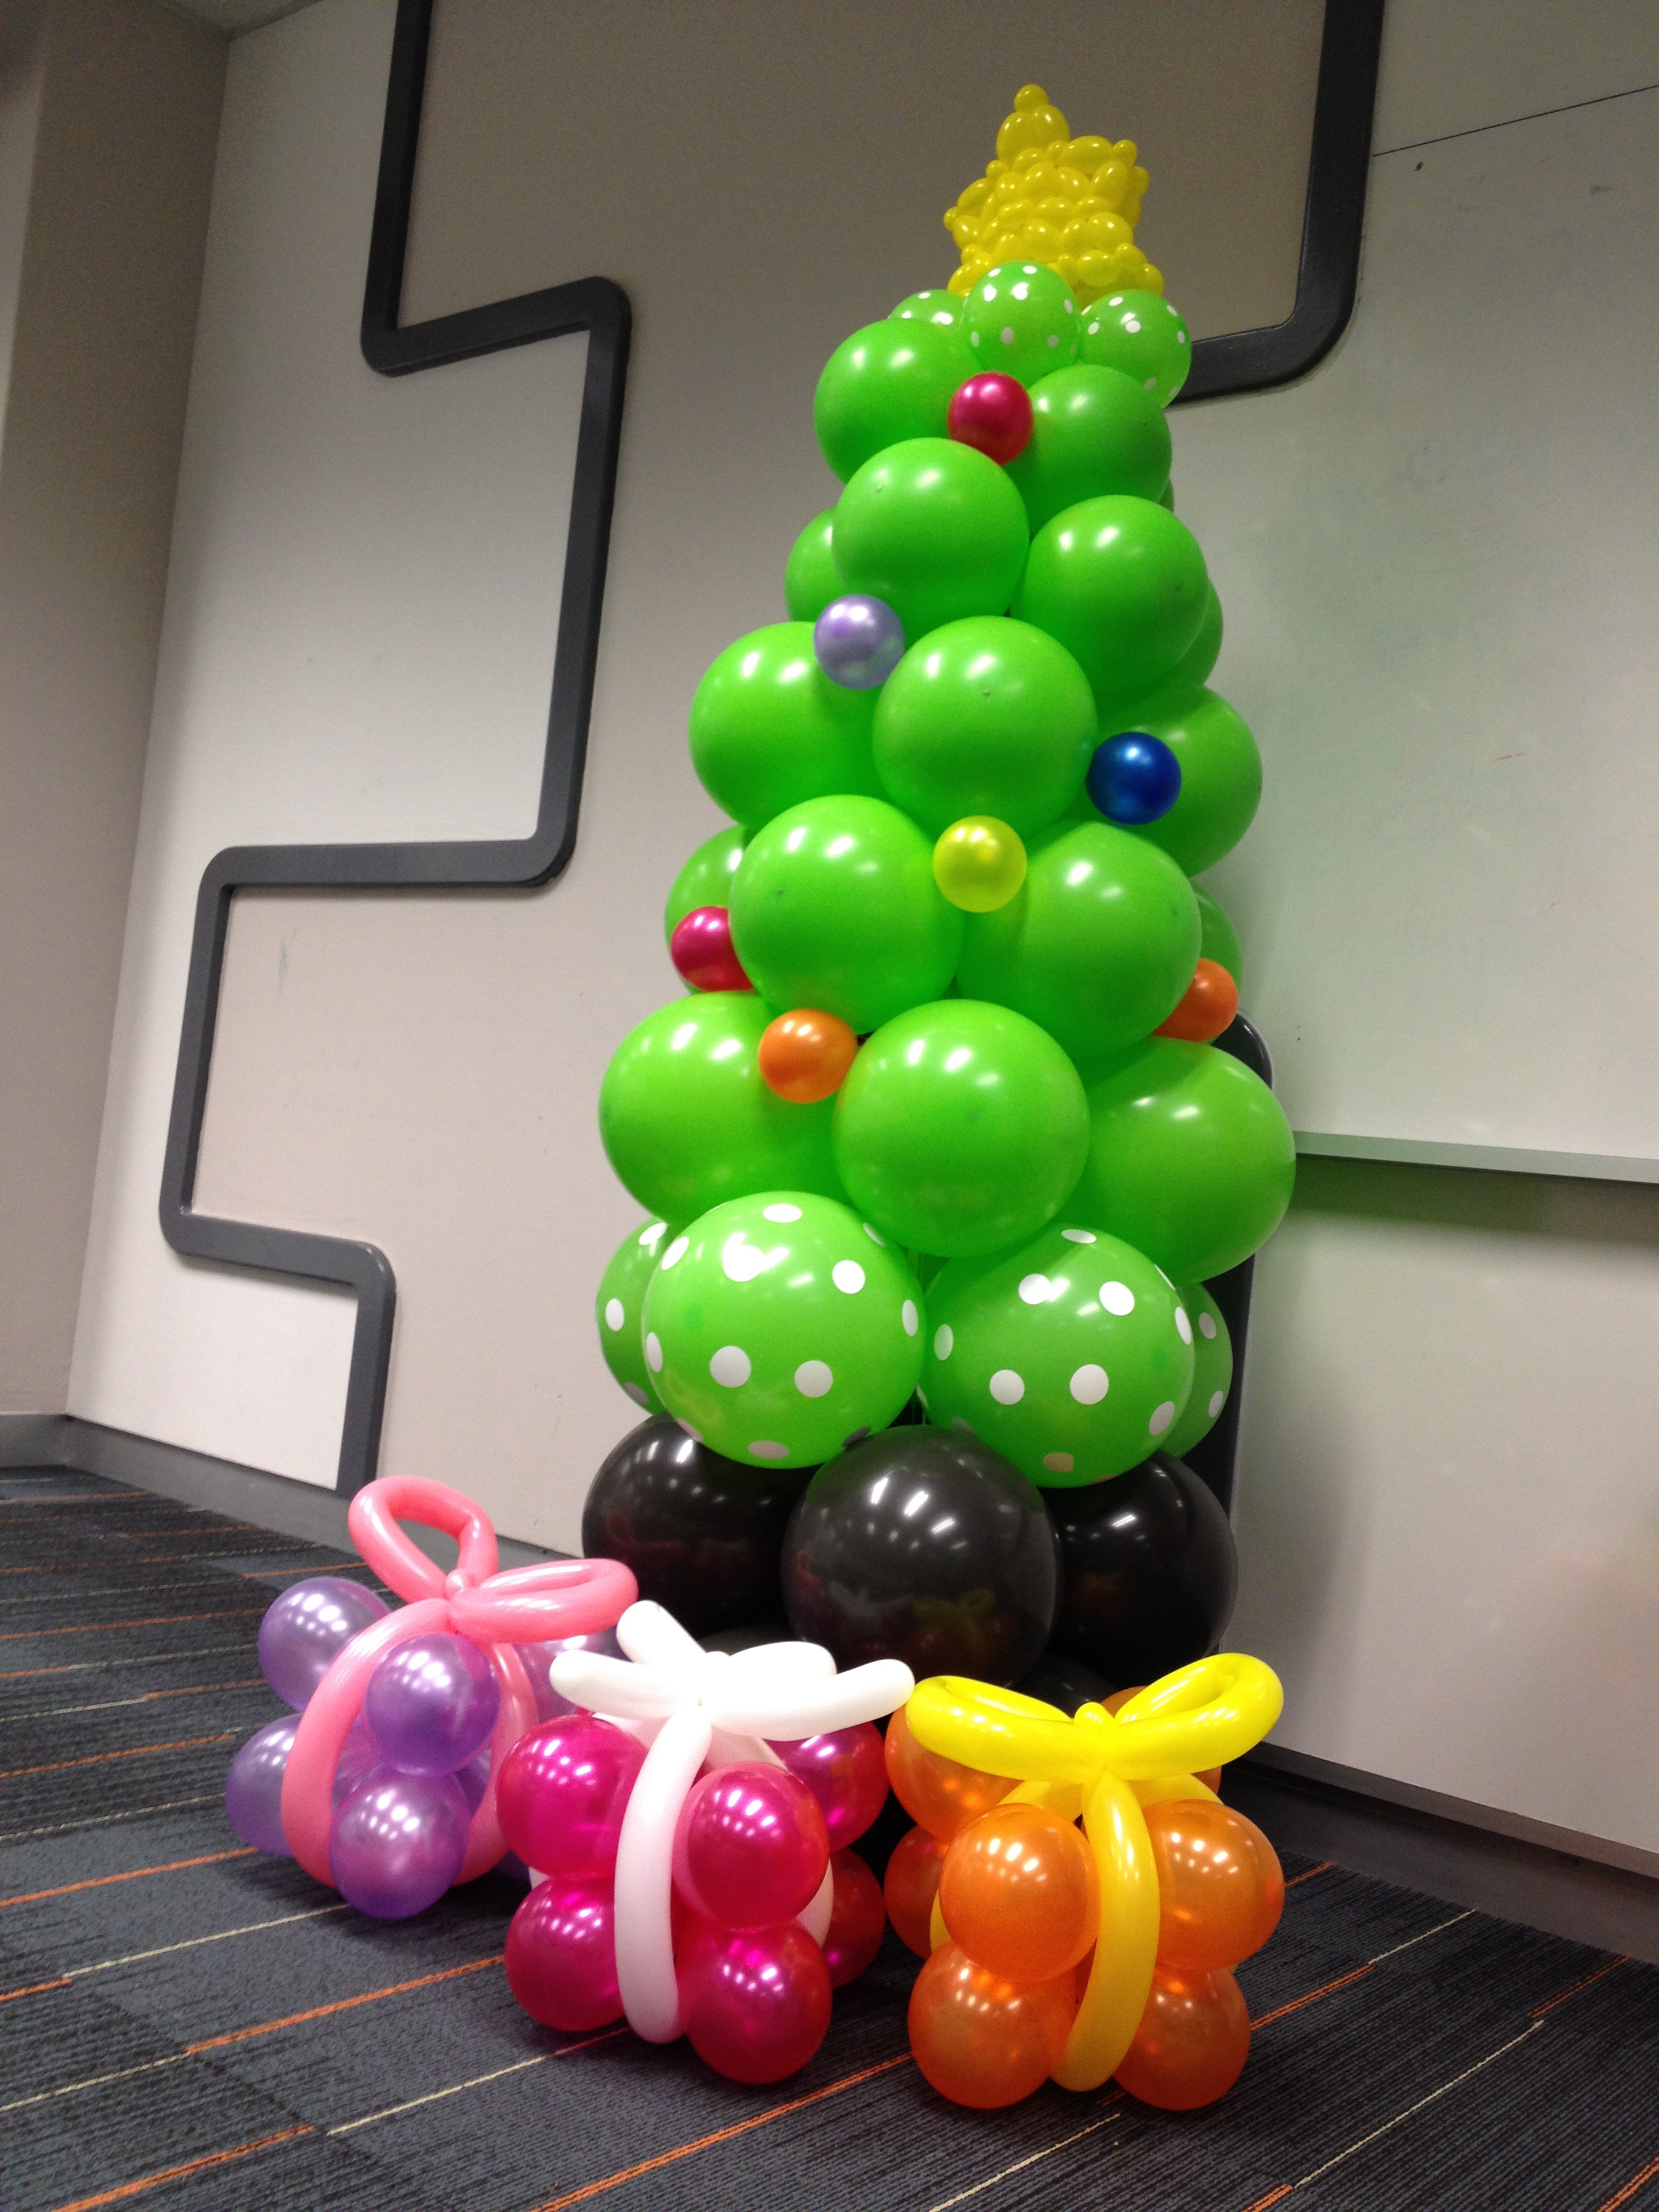 [Bild: Balloon-Christmas-Tree.jpg]